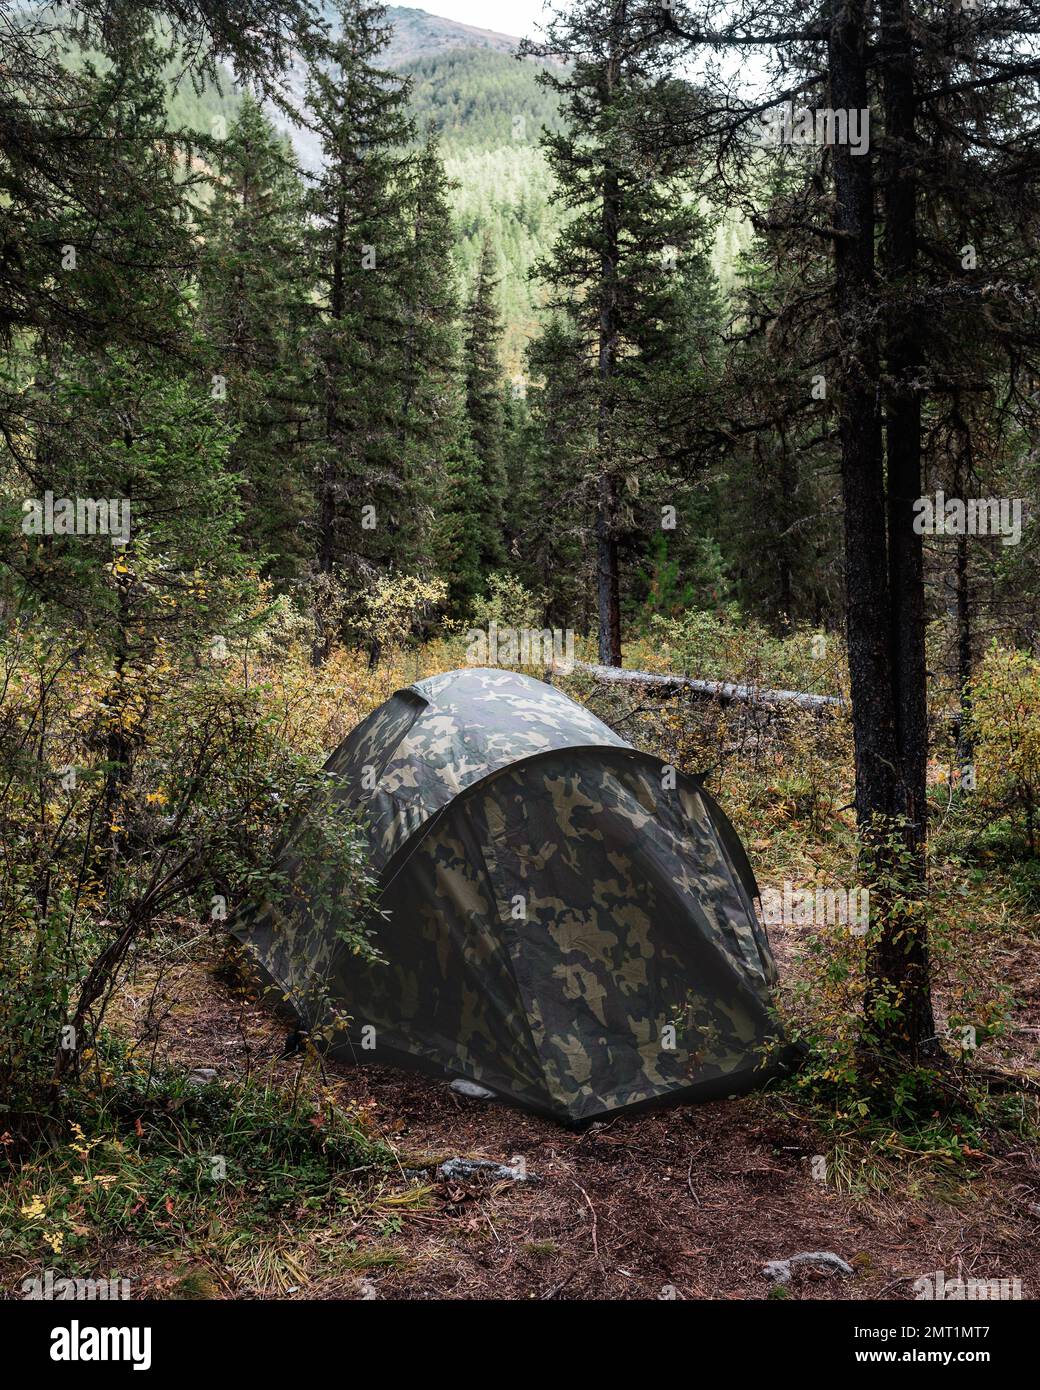 Une tente de camouflage vert se dresse dans la forêt parmi les arbres après la pluie derrière la montagne. Banque D'Images